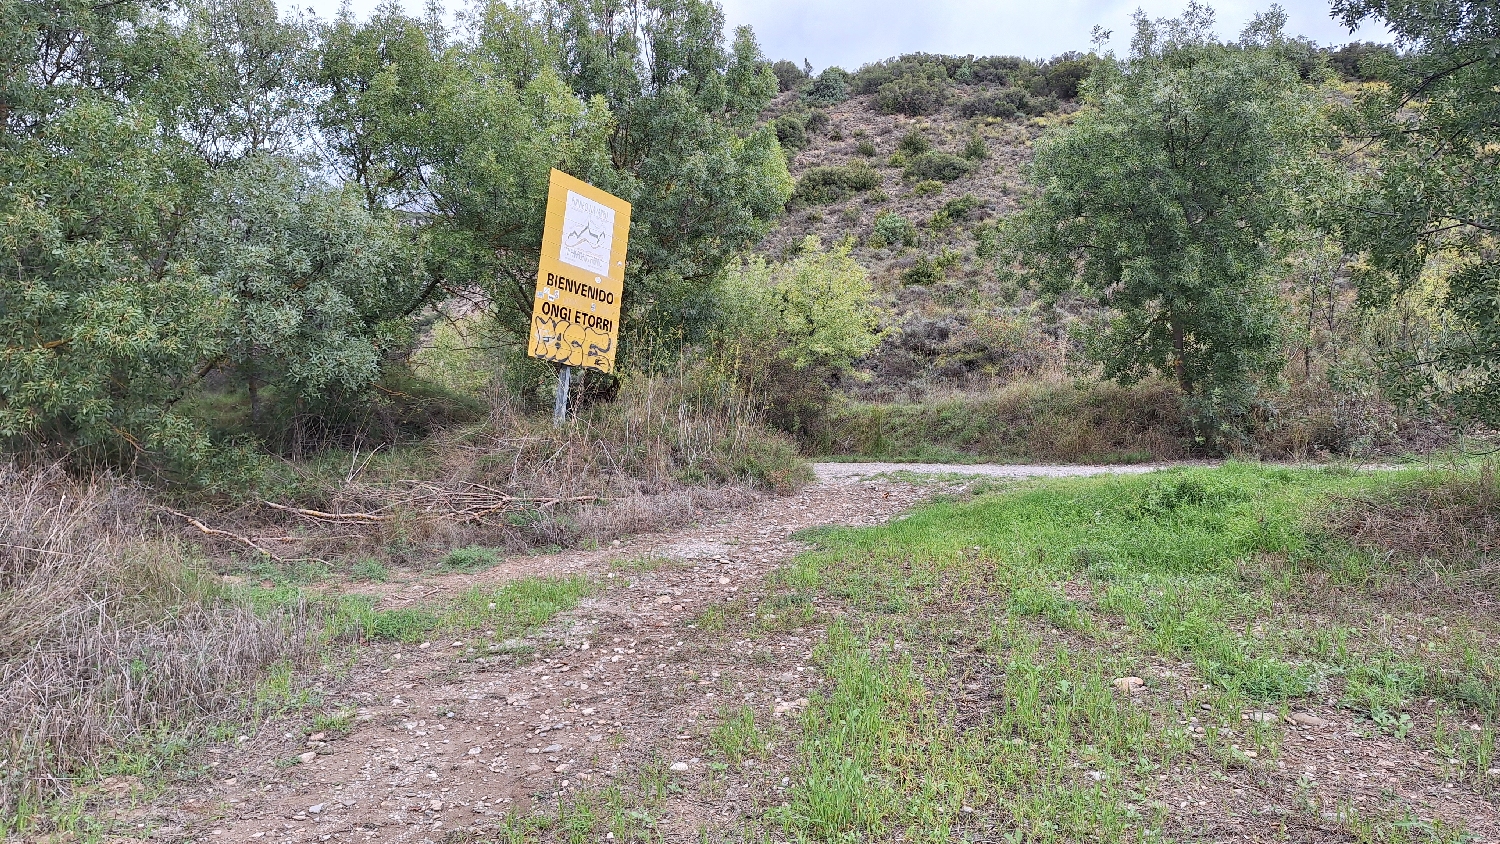 El Camino, Aragon út, tovább a keskeny úton, majd a táblánál balra a széles sétányon